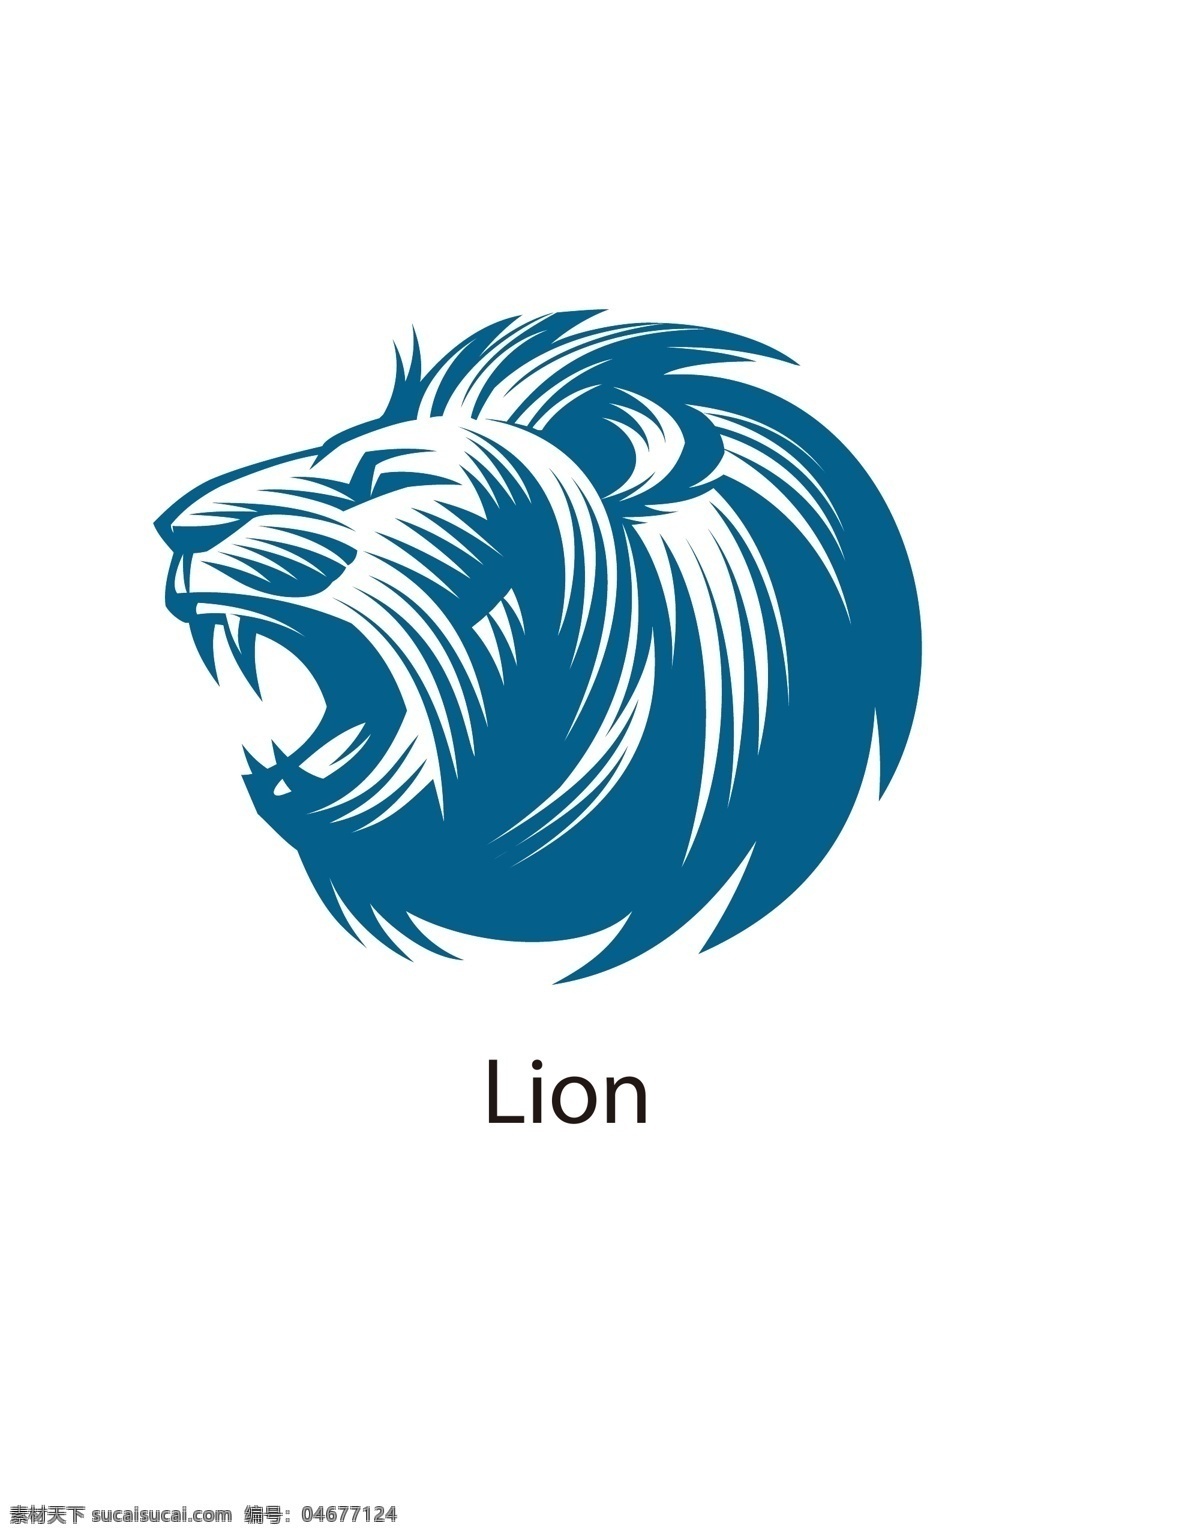 狮子 霸气 lion 威武 自然 动物 野生动物 生物世界